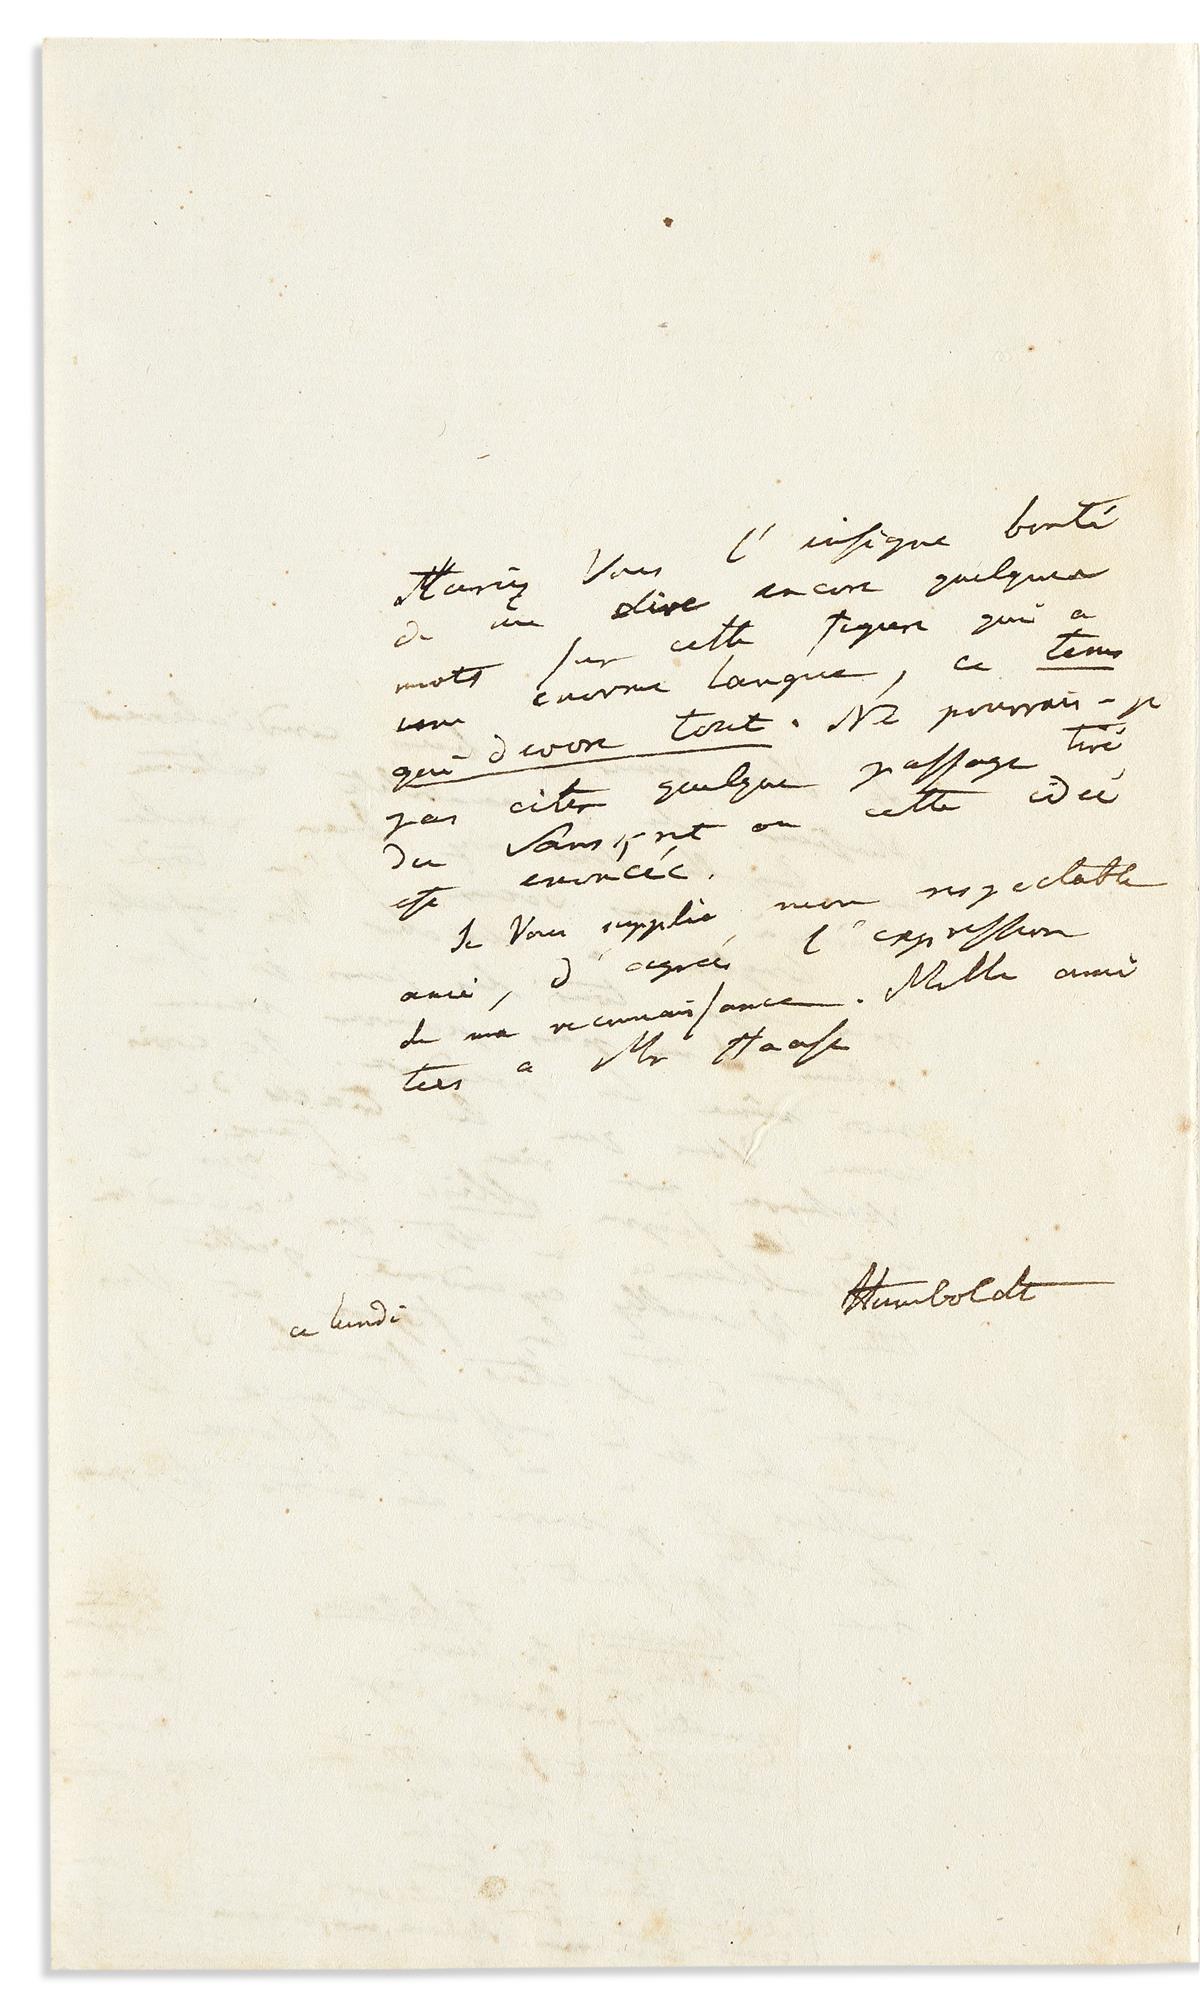 HUMBOLDT, ALEXANDER VON. Autograph Letter Signed, AHumboldt, to Sanskrit scholar Antoine-Léonard de Chézy, in French,